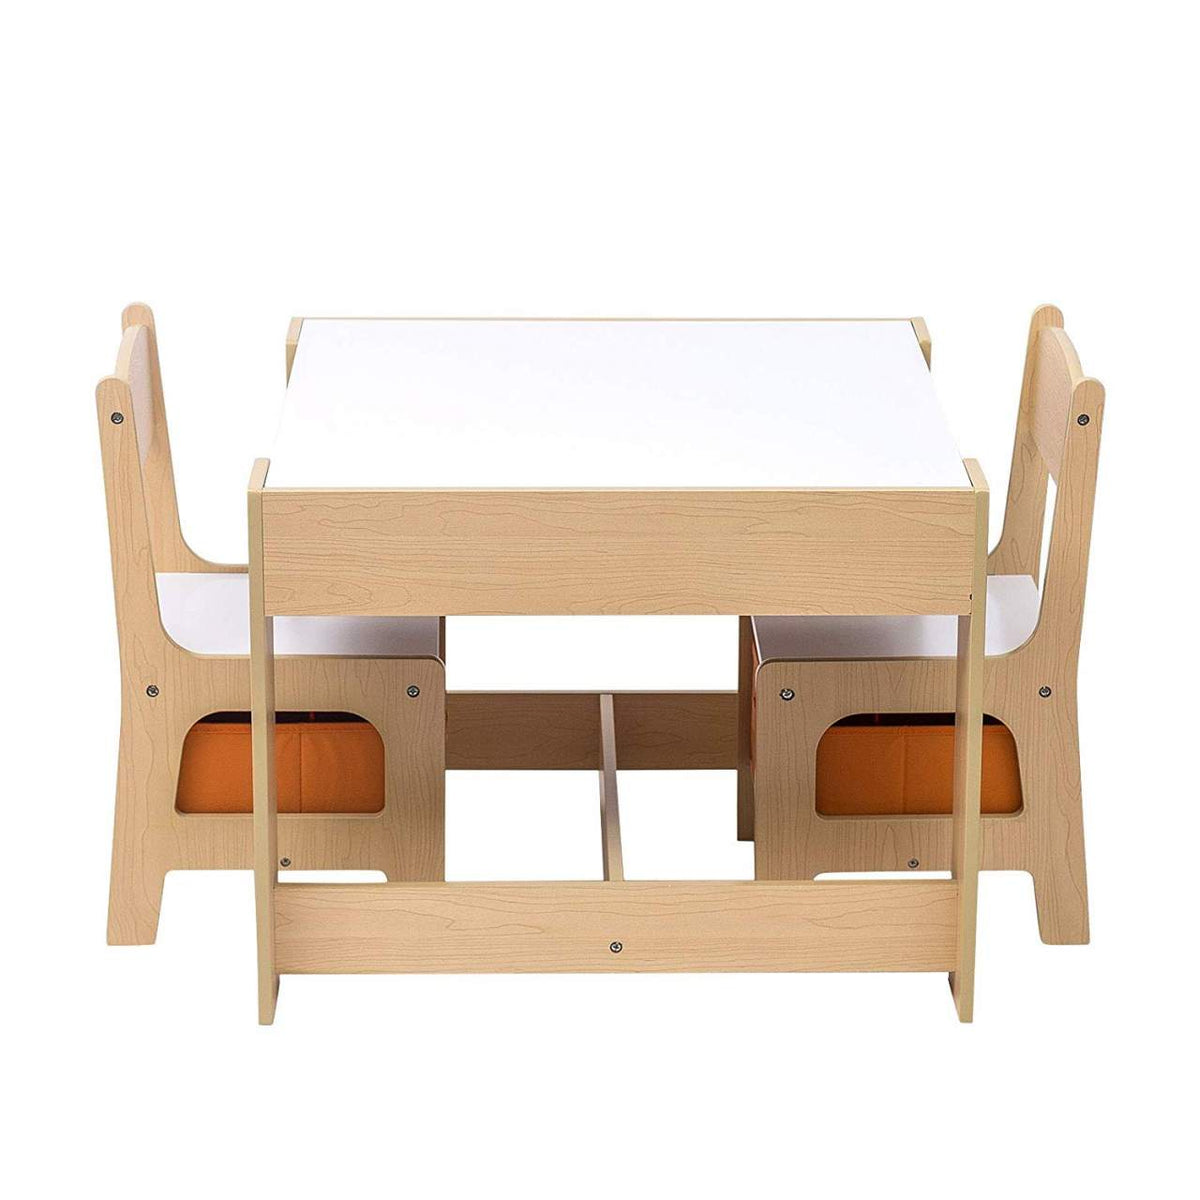 Costway Set di tavolo e sedie per bambini con deposito lavagna